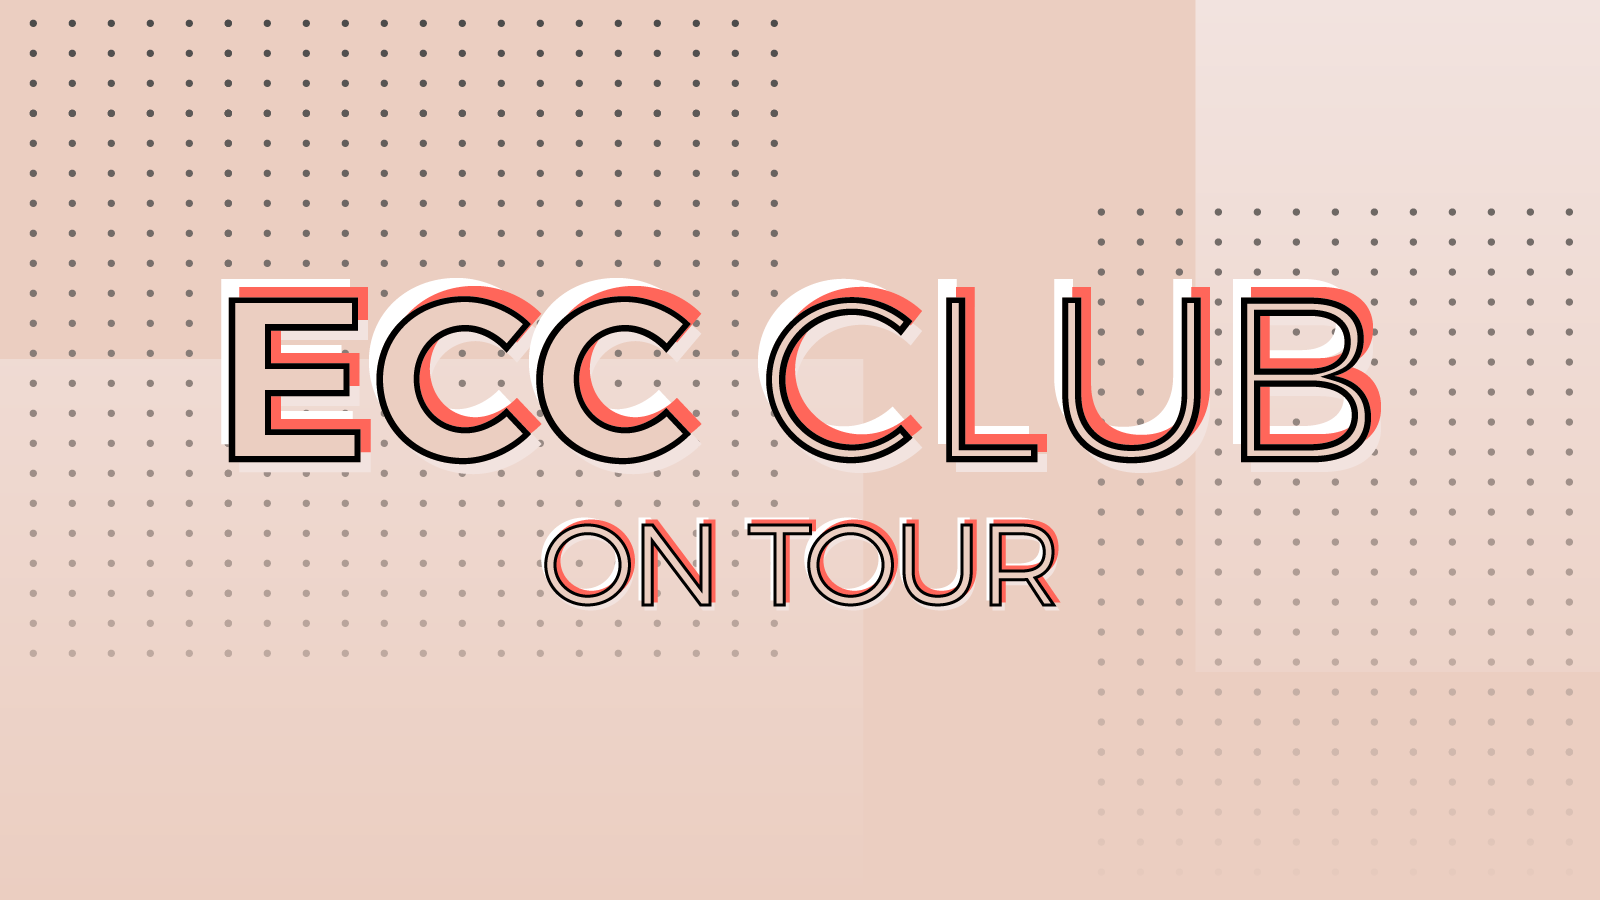 Die Grafik zeigt das Logo der ECC CLUB on tour auf einem Hintergrund aus Vierecken und Punkten.